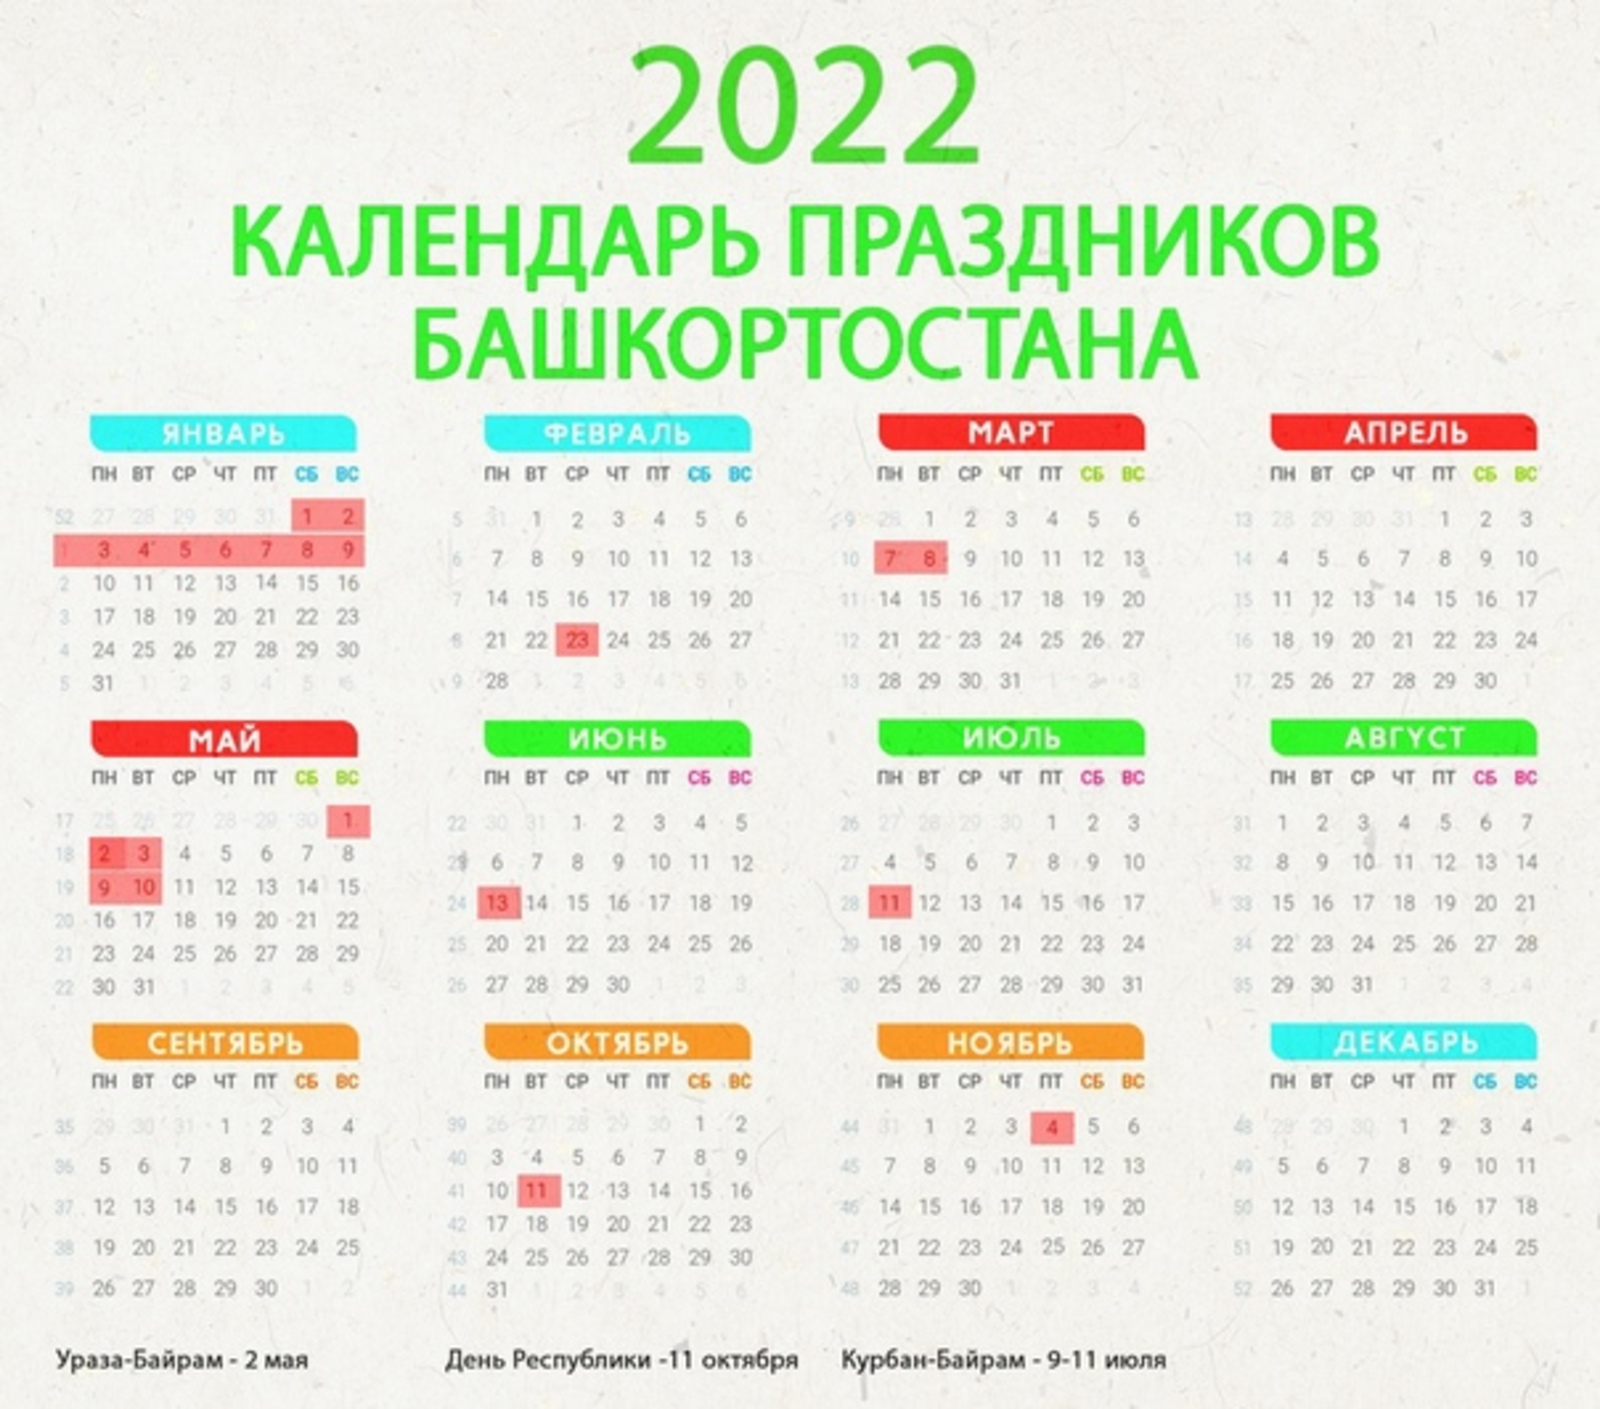 Какие праздники 2022 году. Праздничные дни в 2022 году в Башкирии. Календарь 2022 с праздниками Башкортостан. Праздничные дни в июле 2022 в Башкирии. Праздники в октябре 2022 в Башкирии.